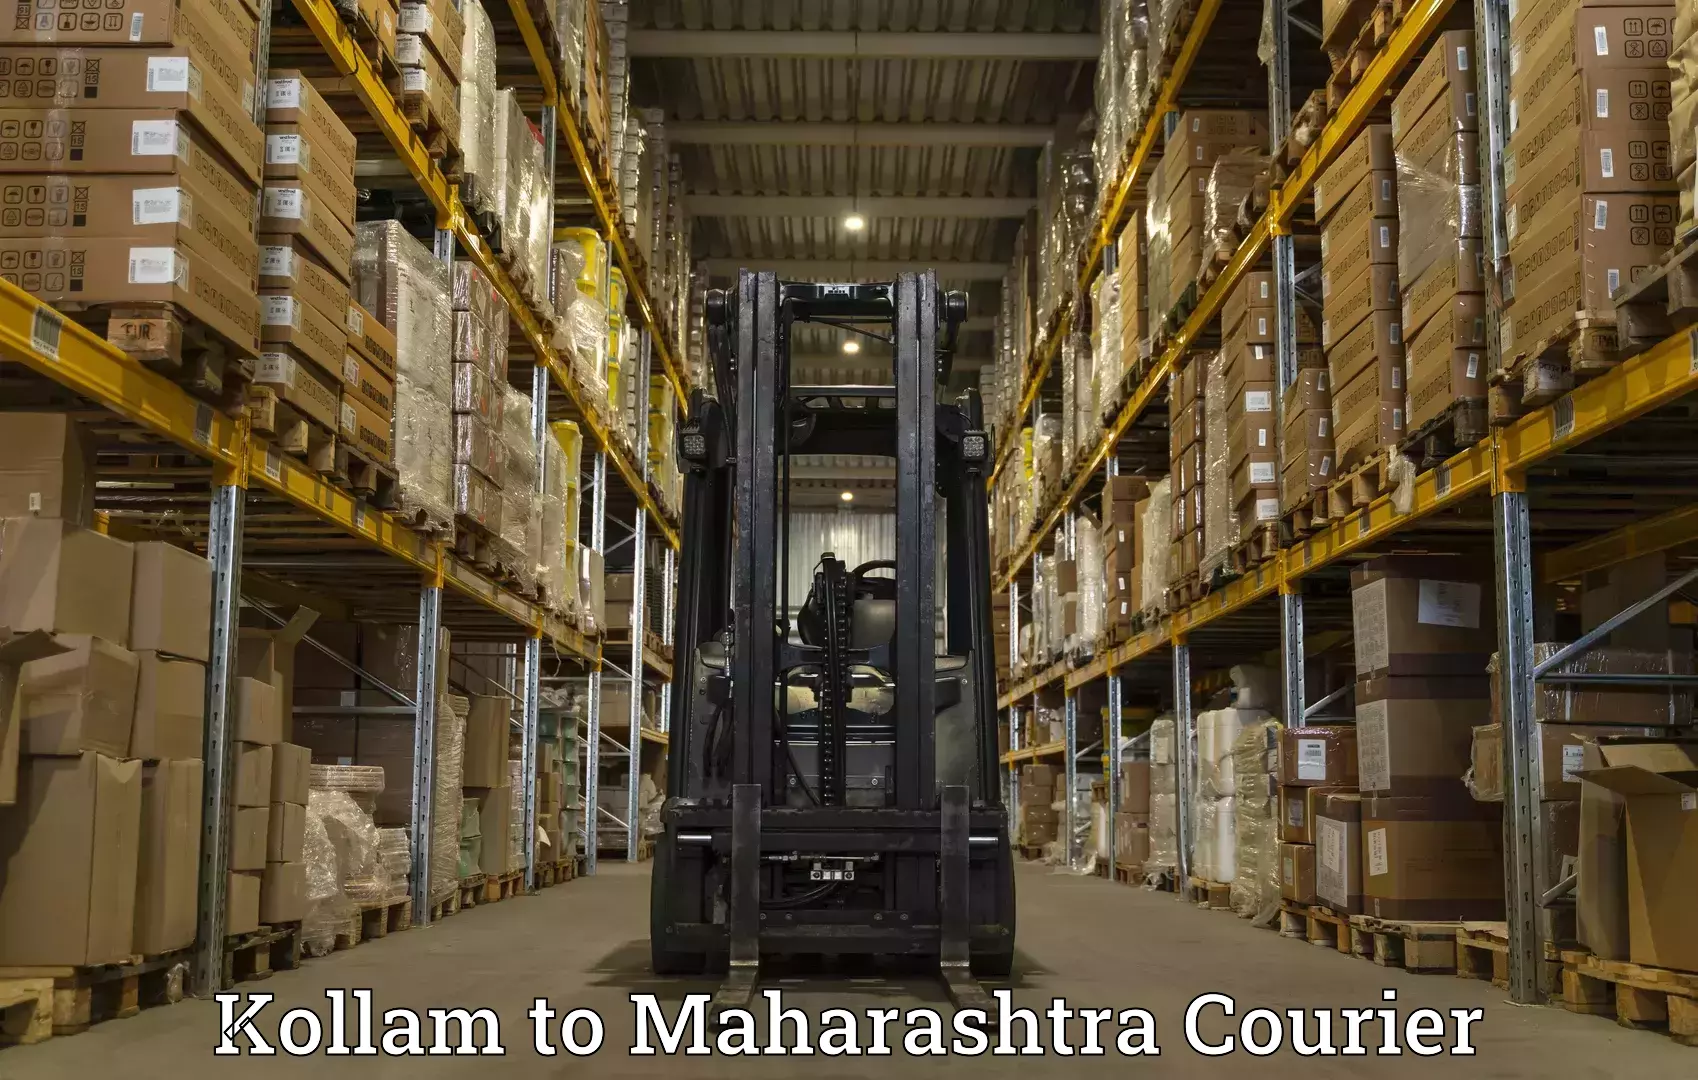 Efficient freight service Kollam to Maharashtra